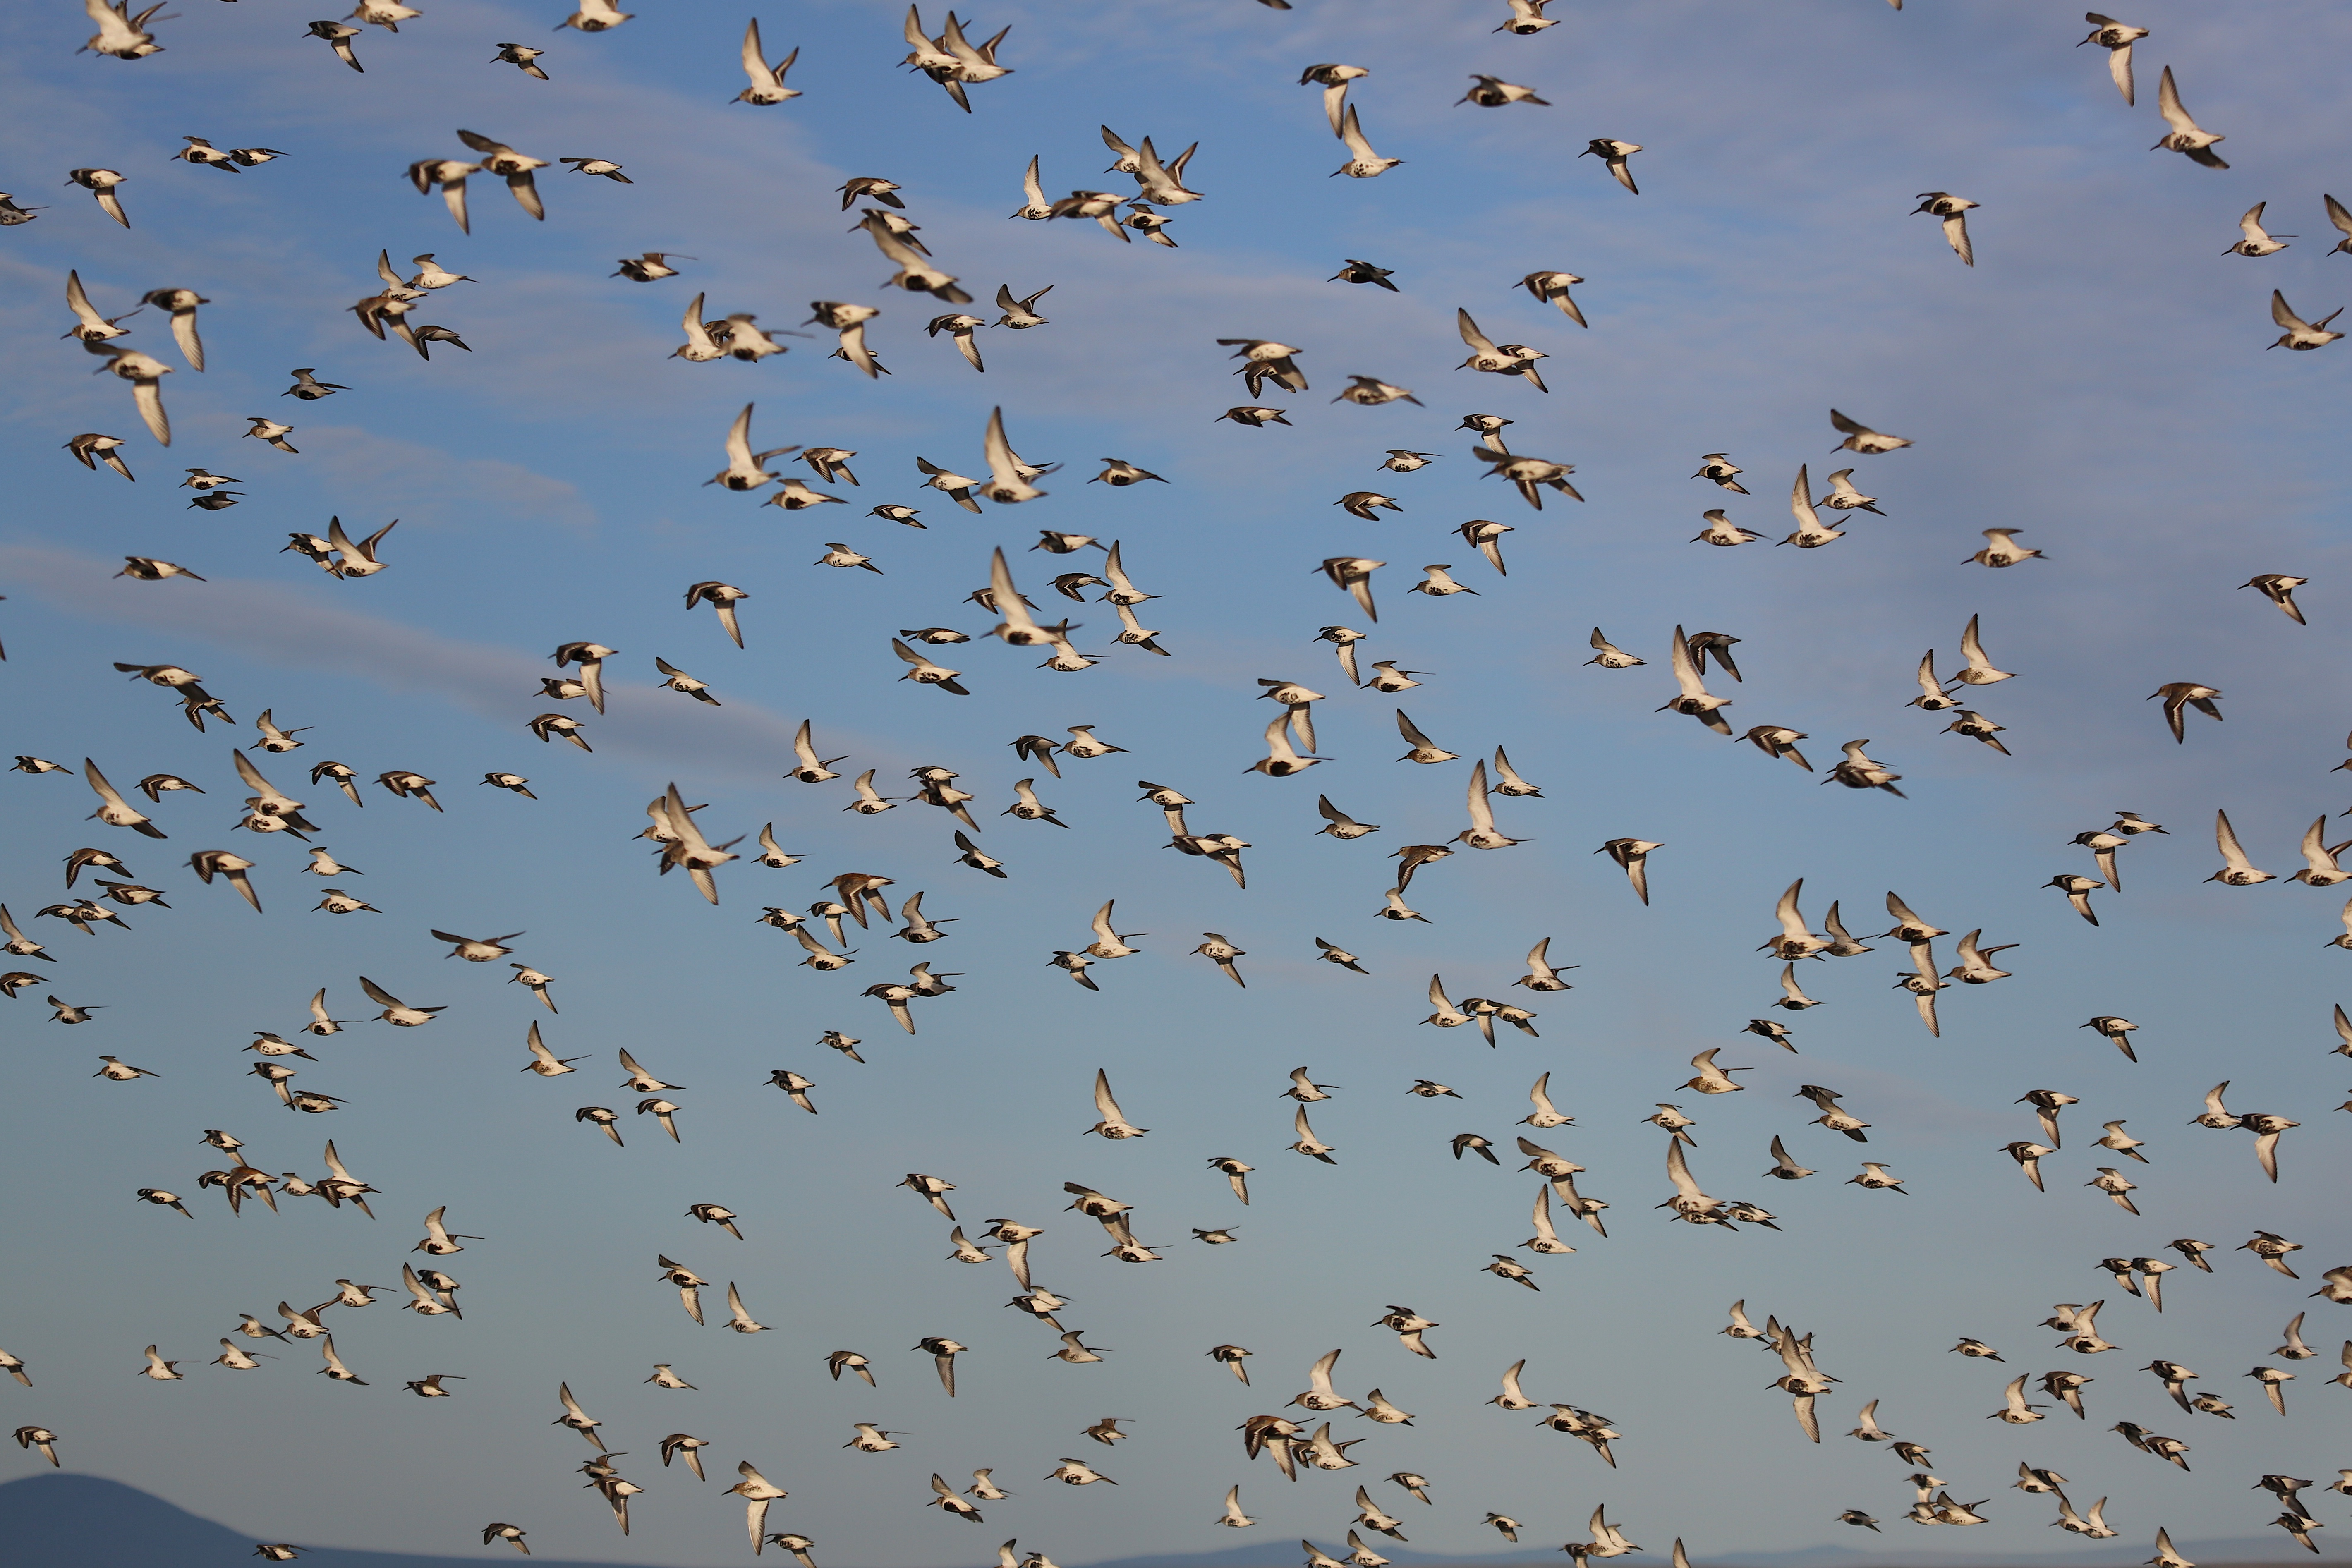 Flock of shore birds taking flight